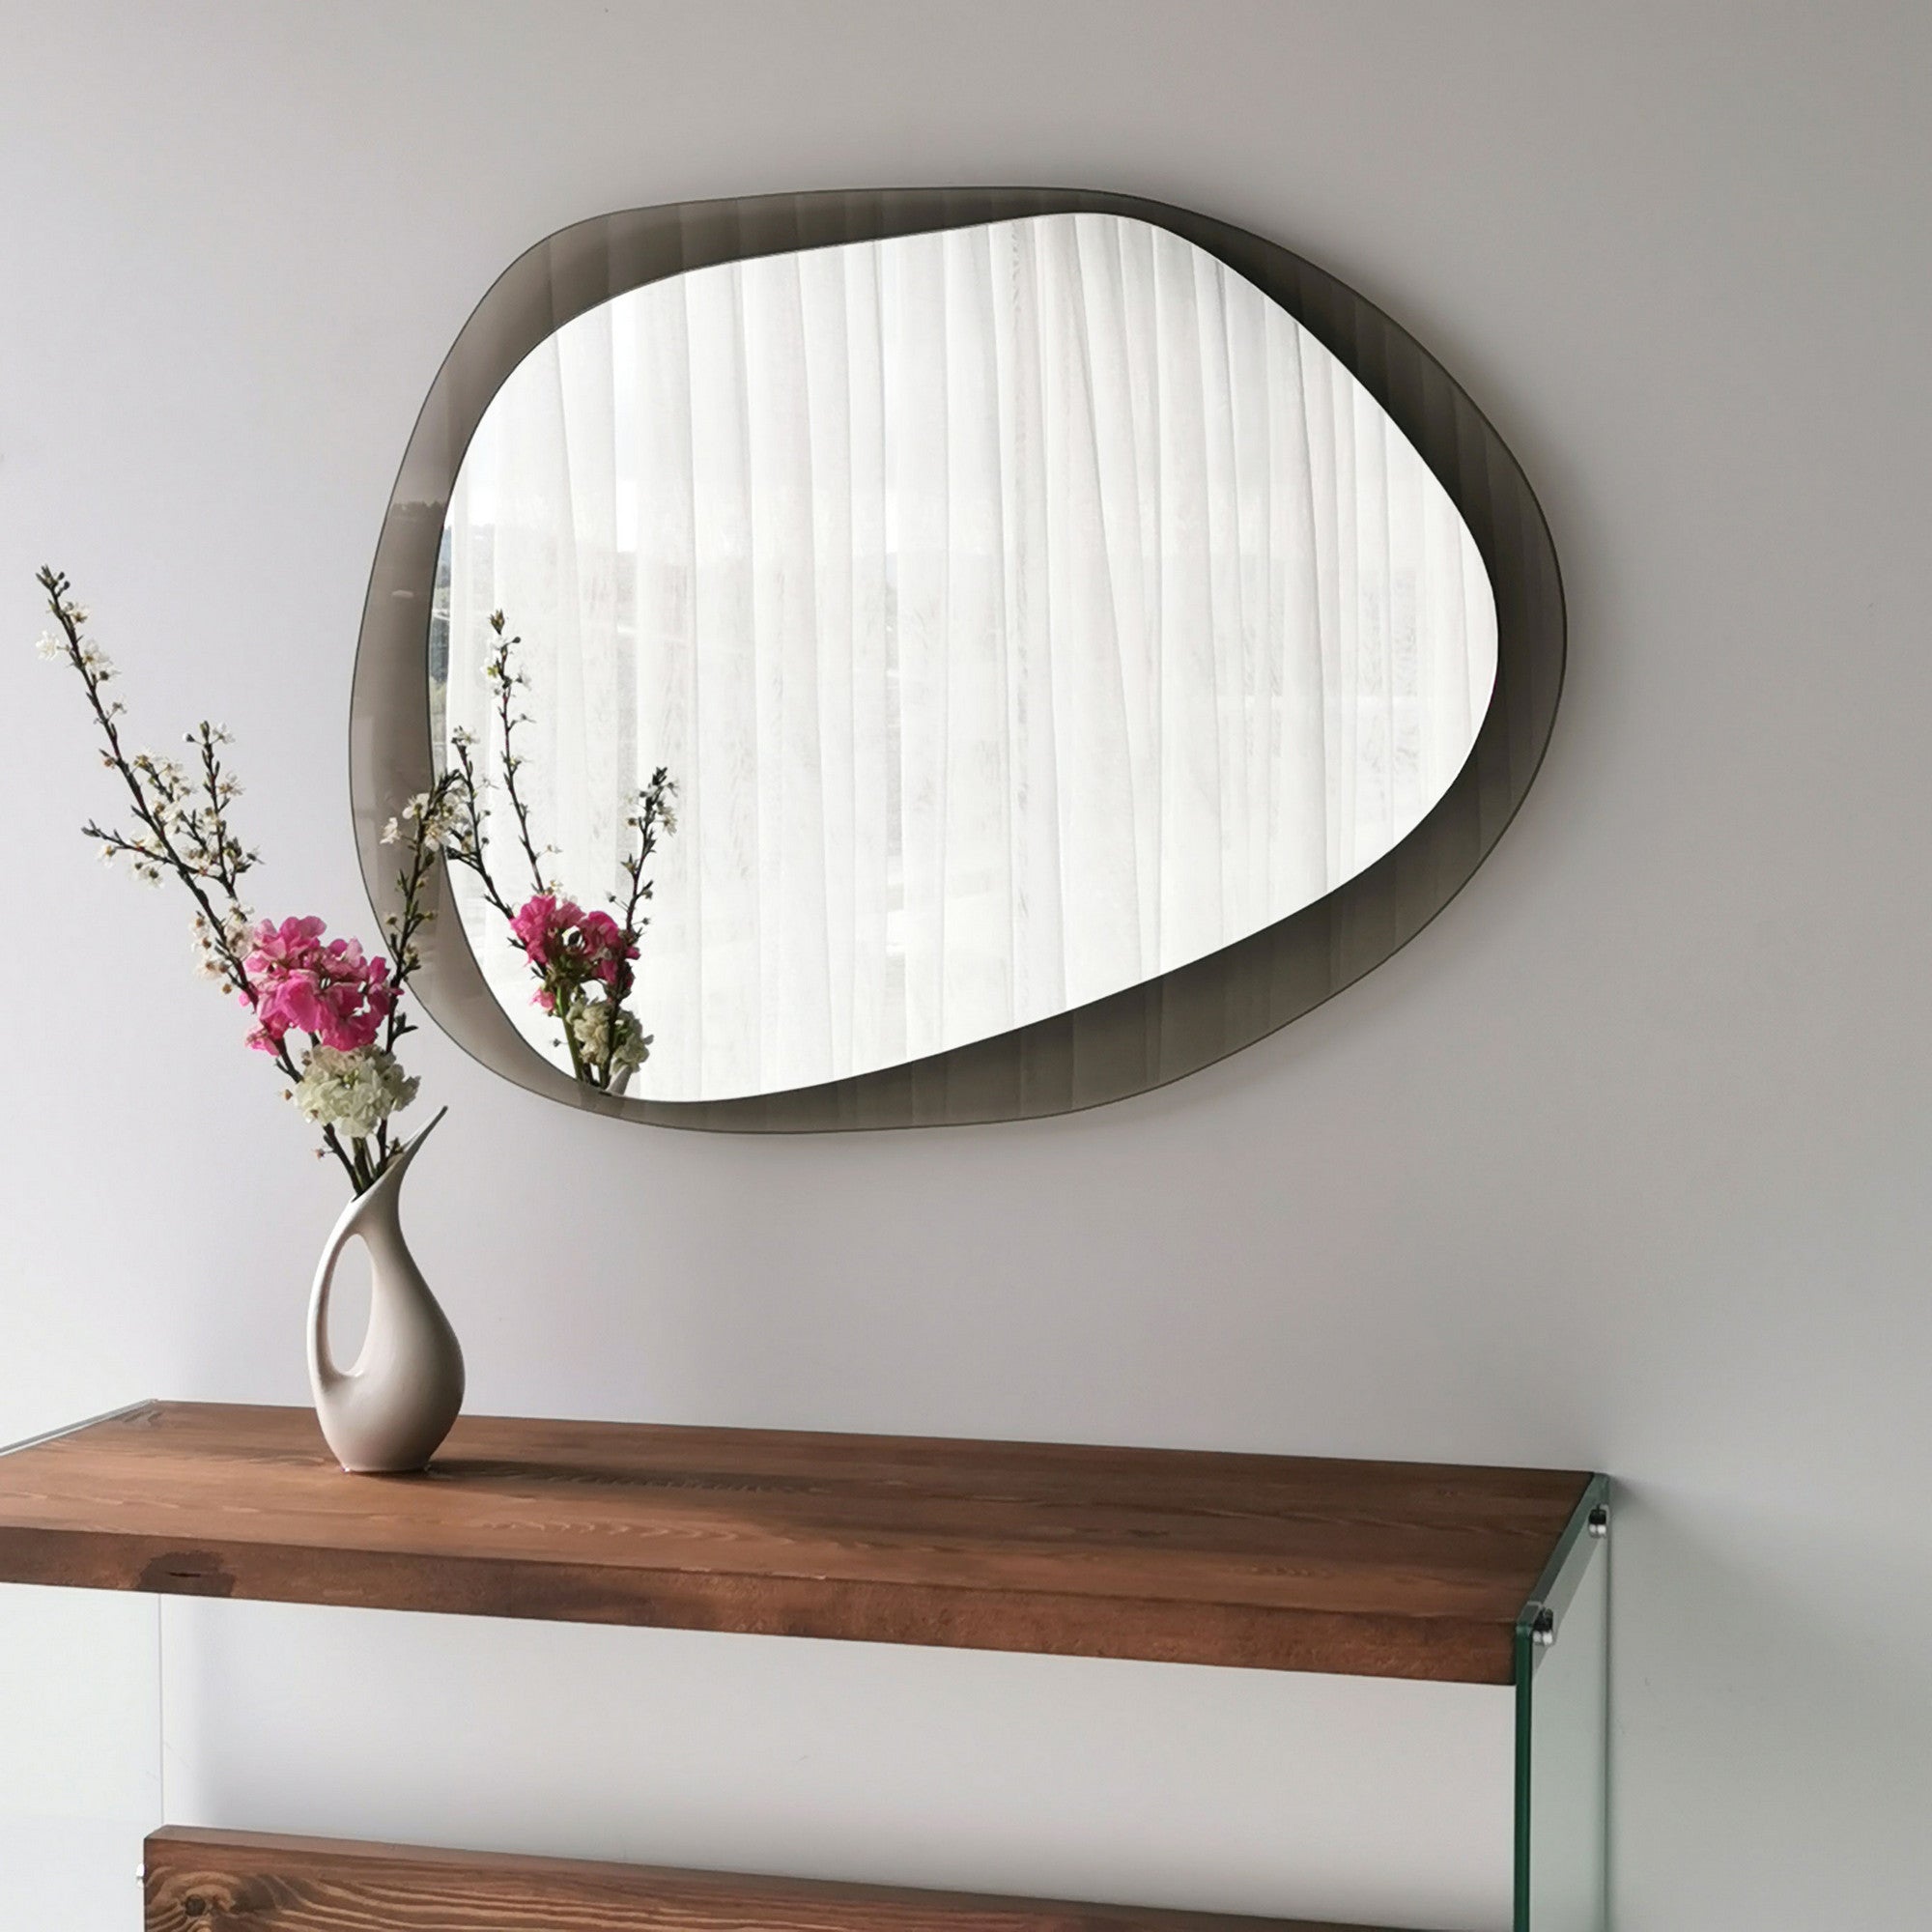 Specchio decorativo da muro design elegante rettangolare con disegno –  Colly Shop